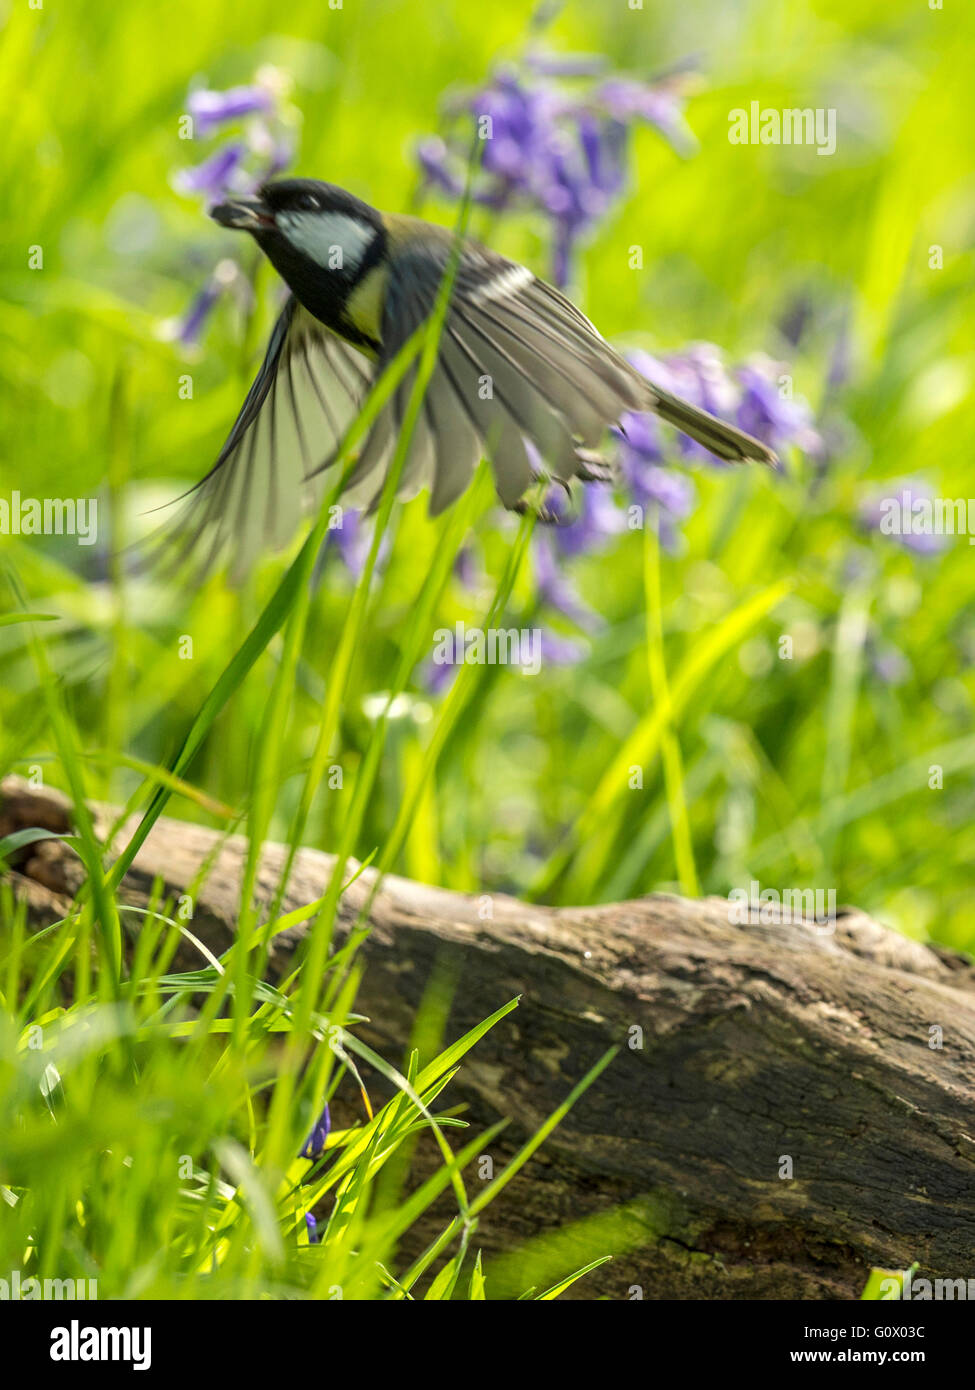 Große Titten (große Paripus) Nahrungssuche in Wald Natur. "Dargestellt, auf der Flucht", umgeben von blauen Glocken, Bewegungsunschärfe Stockfoto